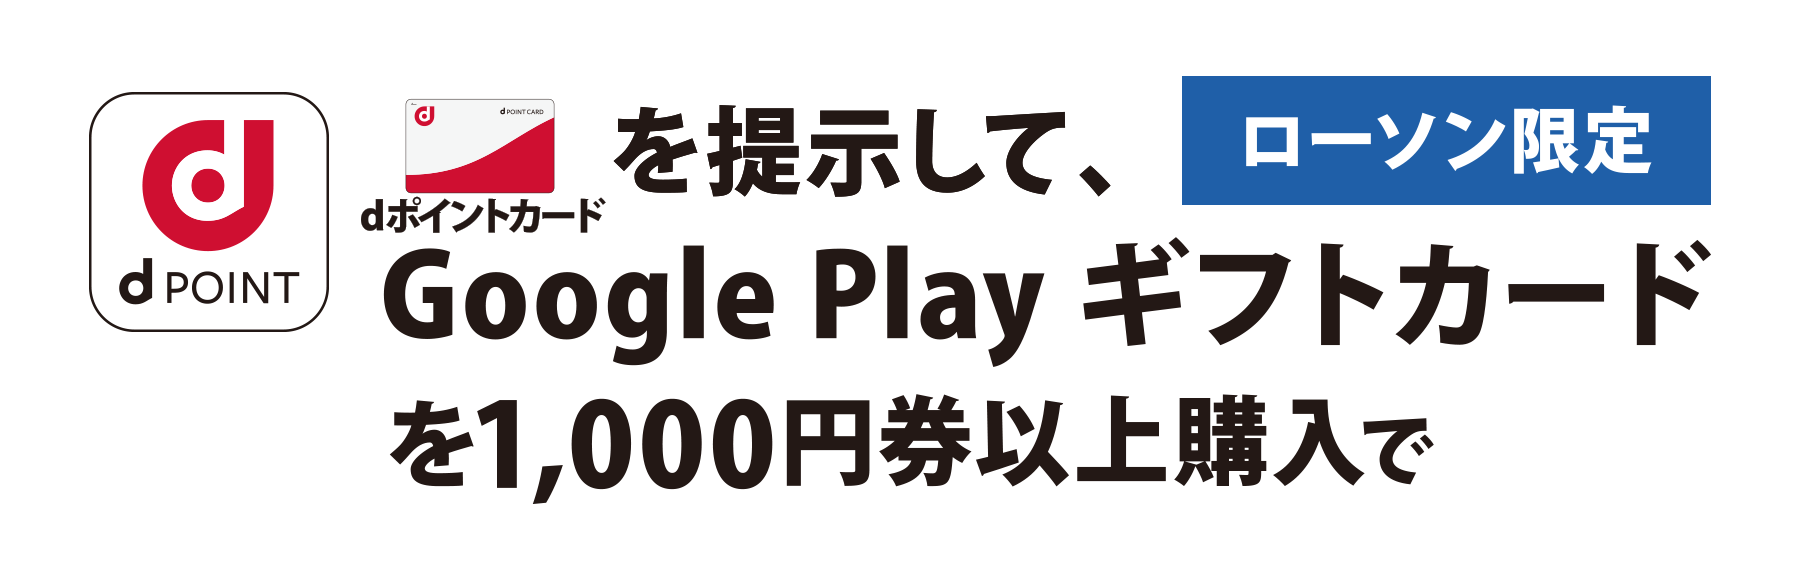 ローソン限定 dポイントカードを提示して、 Google Play ギフトカードを1,000円券以上購入で